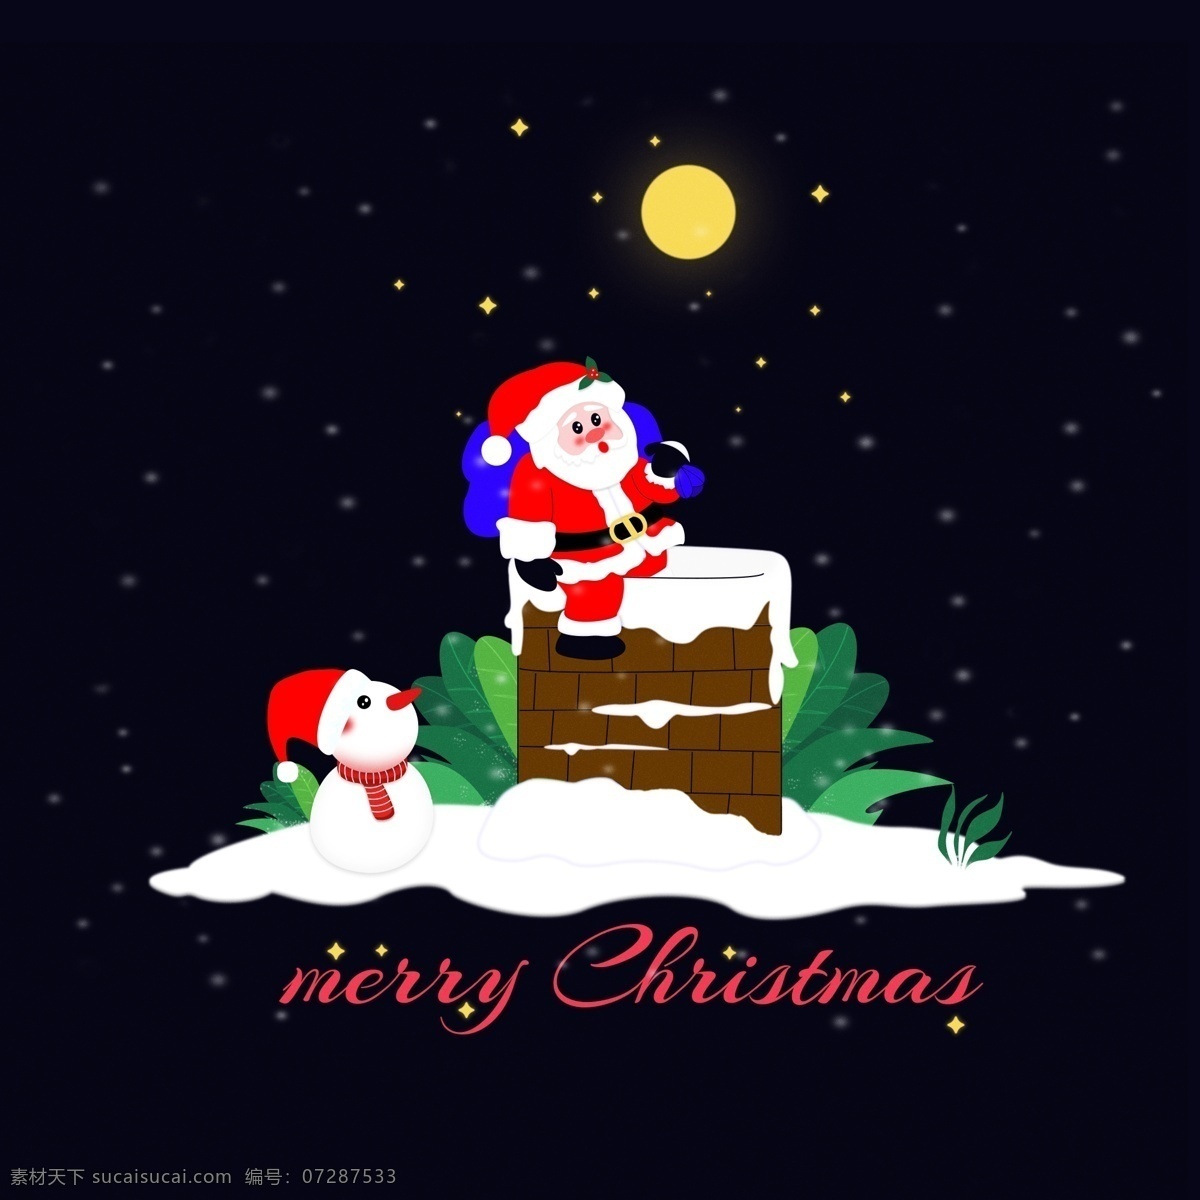 圣诞节 平安夜 场景 插画 商用 元素 圣诞老人 雪人 圣诞雪人 圣诞场景